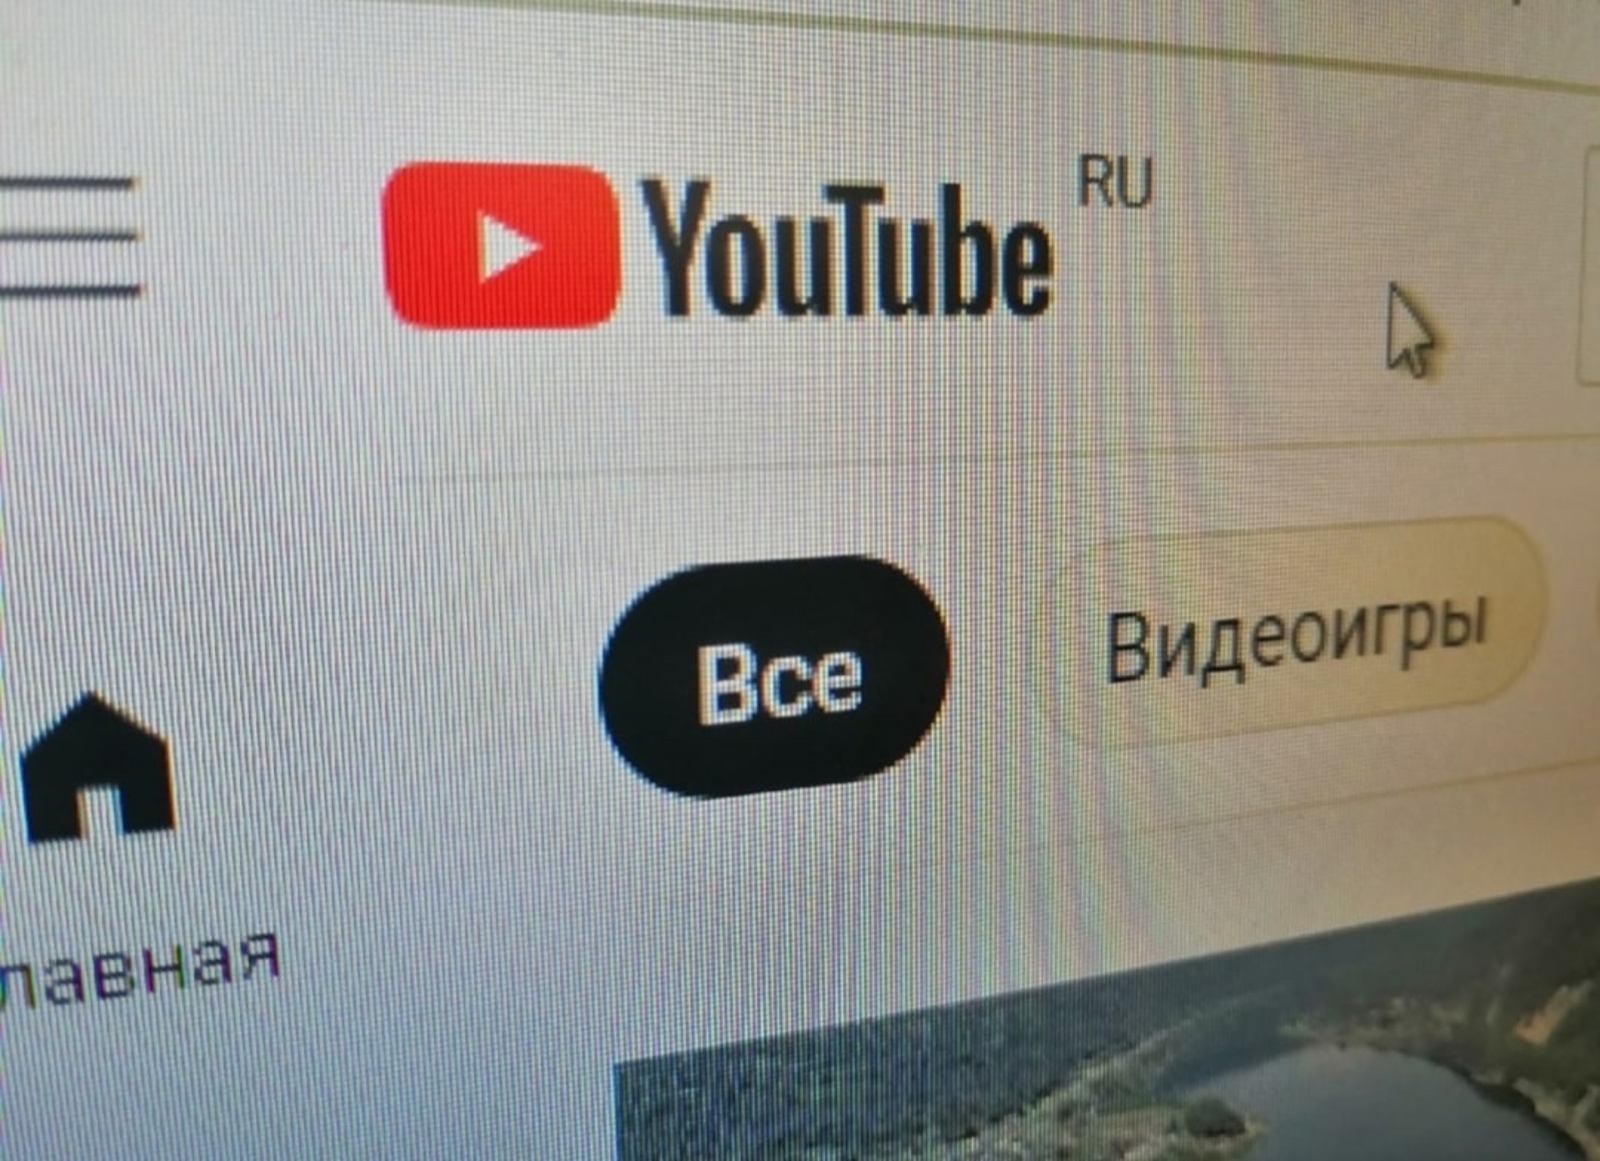 Медиаэксперт из Башкортостана: Видеохостинг YouTube действует вне правового поля и постепенно выходит из доверия россиян